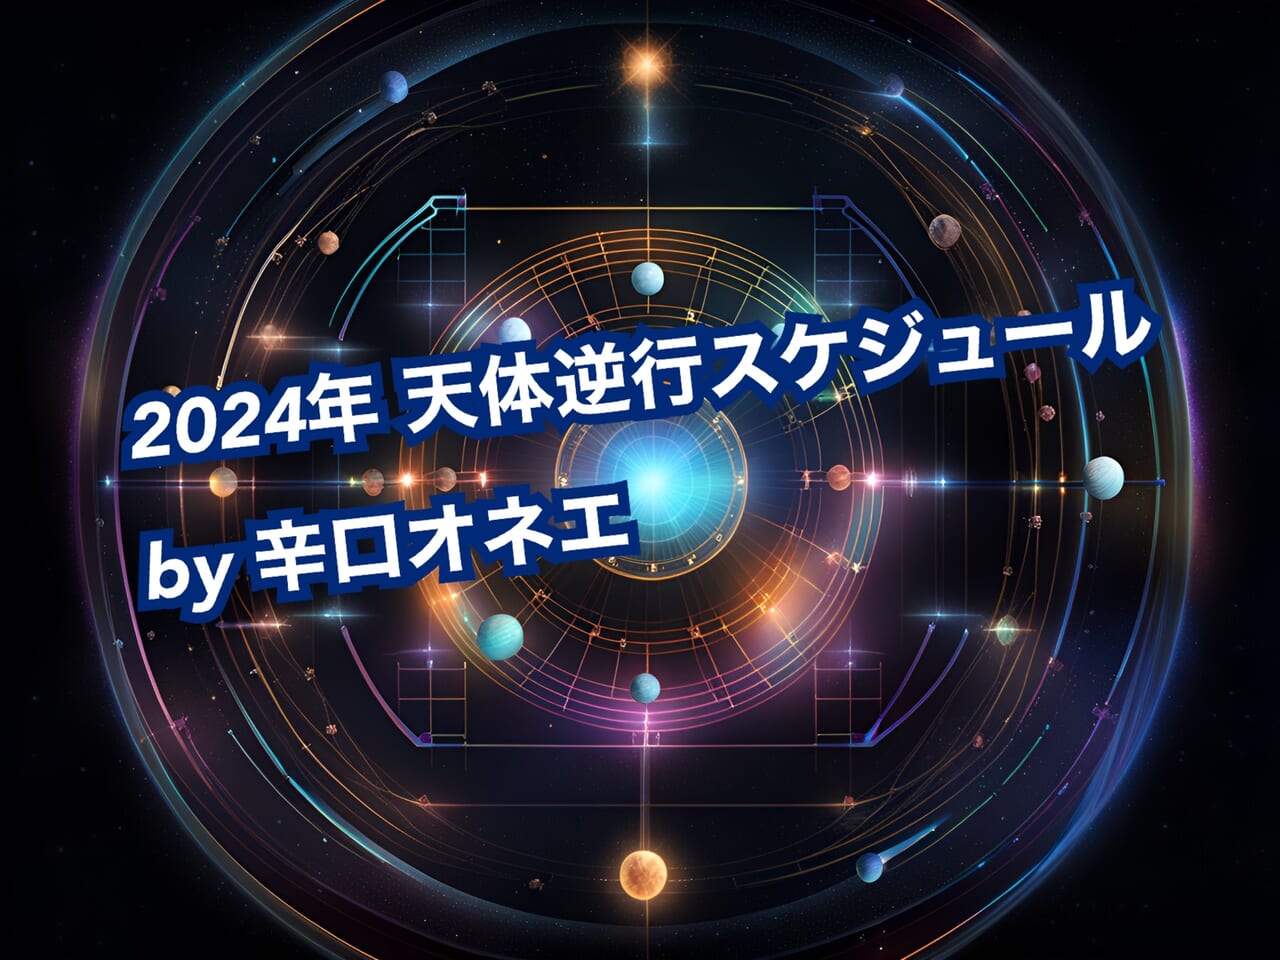 【2024年】天体逆行スケジュール【辛口オネエの西洋占星術】